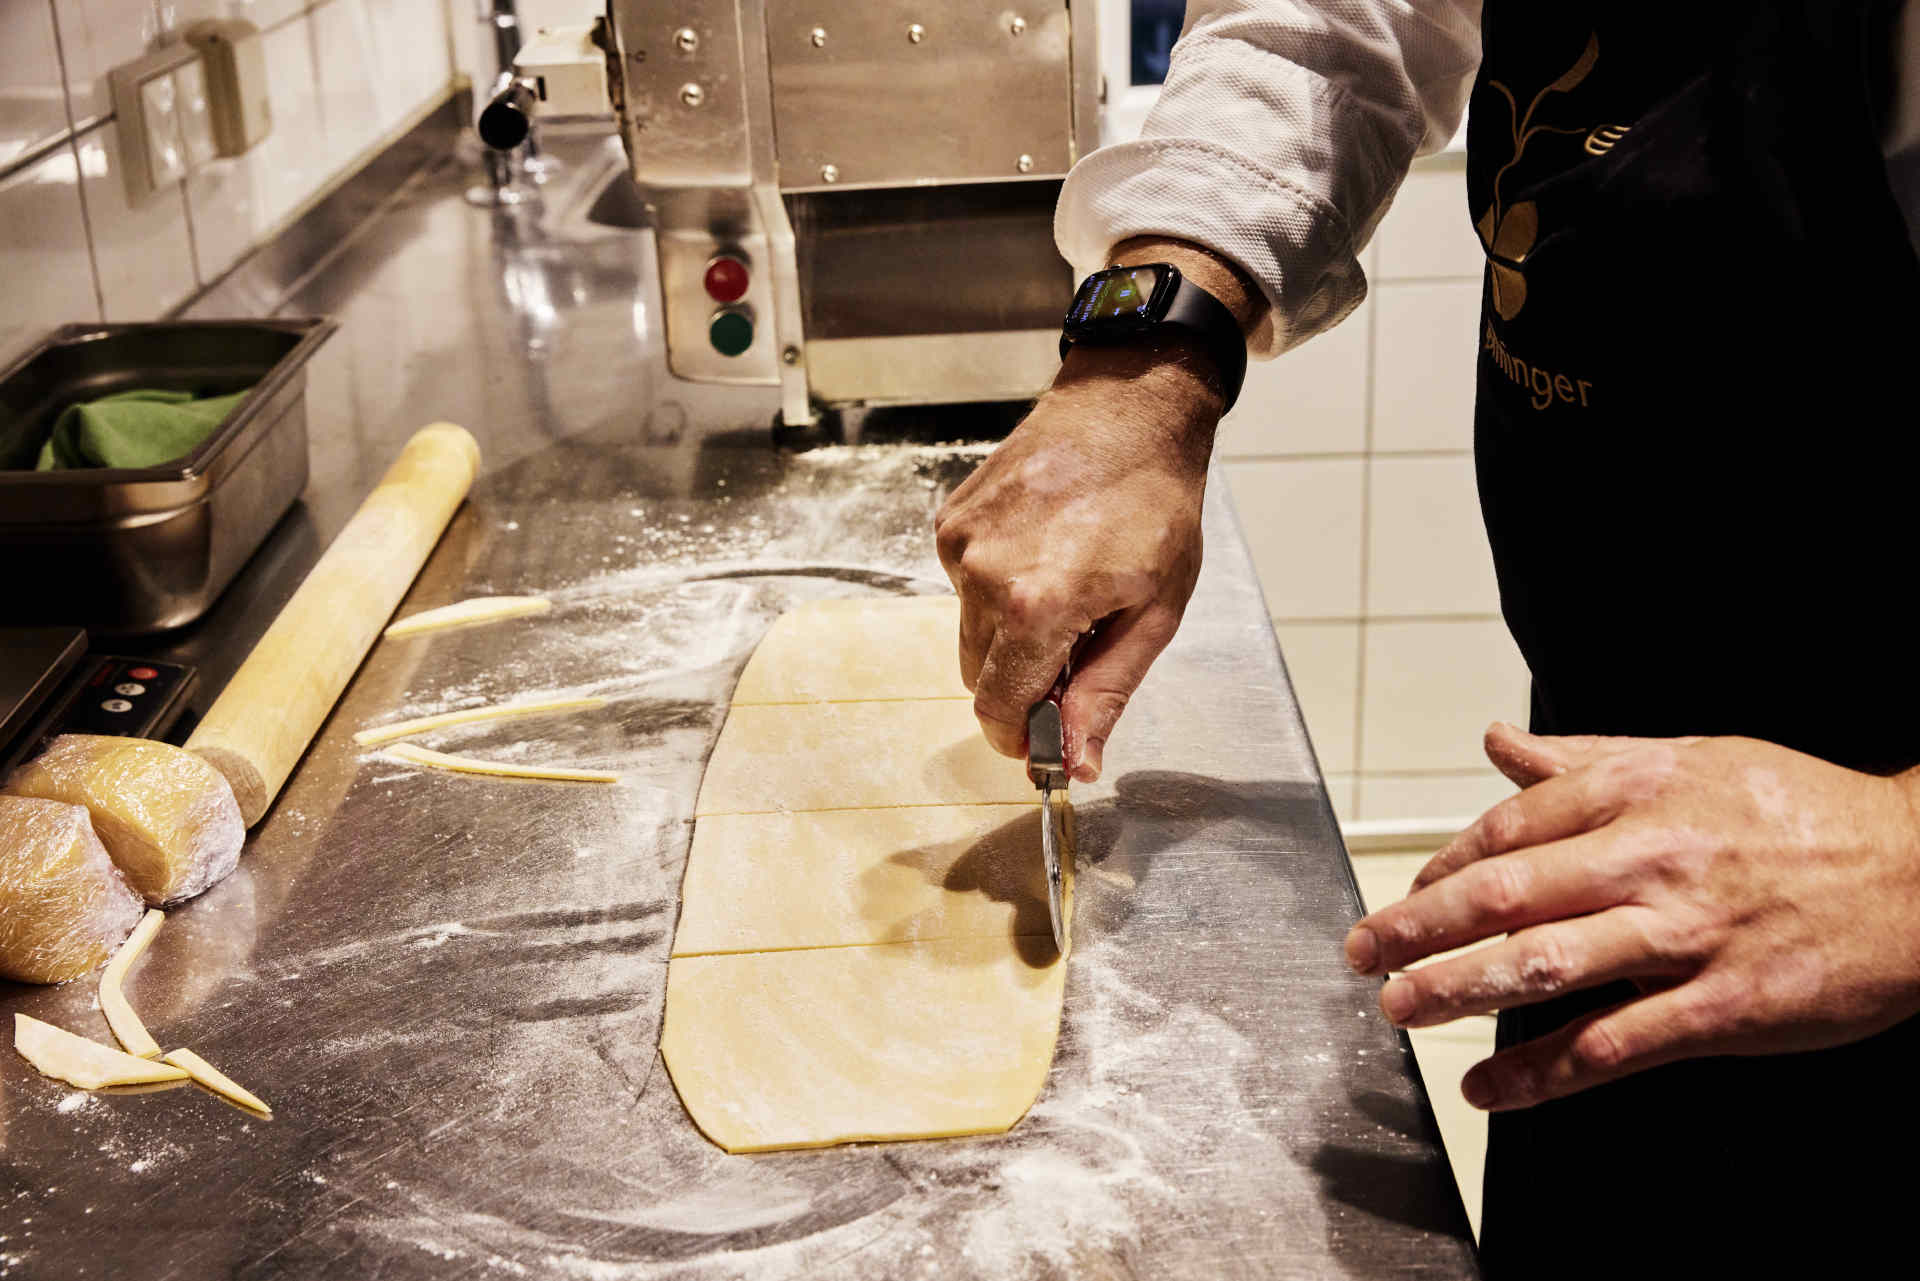 Der glutenfreie Pastateig für die Chitarra besteht aus Maismehl, Reismehl, Eiern, Olivenöl und Salz. © Katharina Dubno